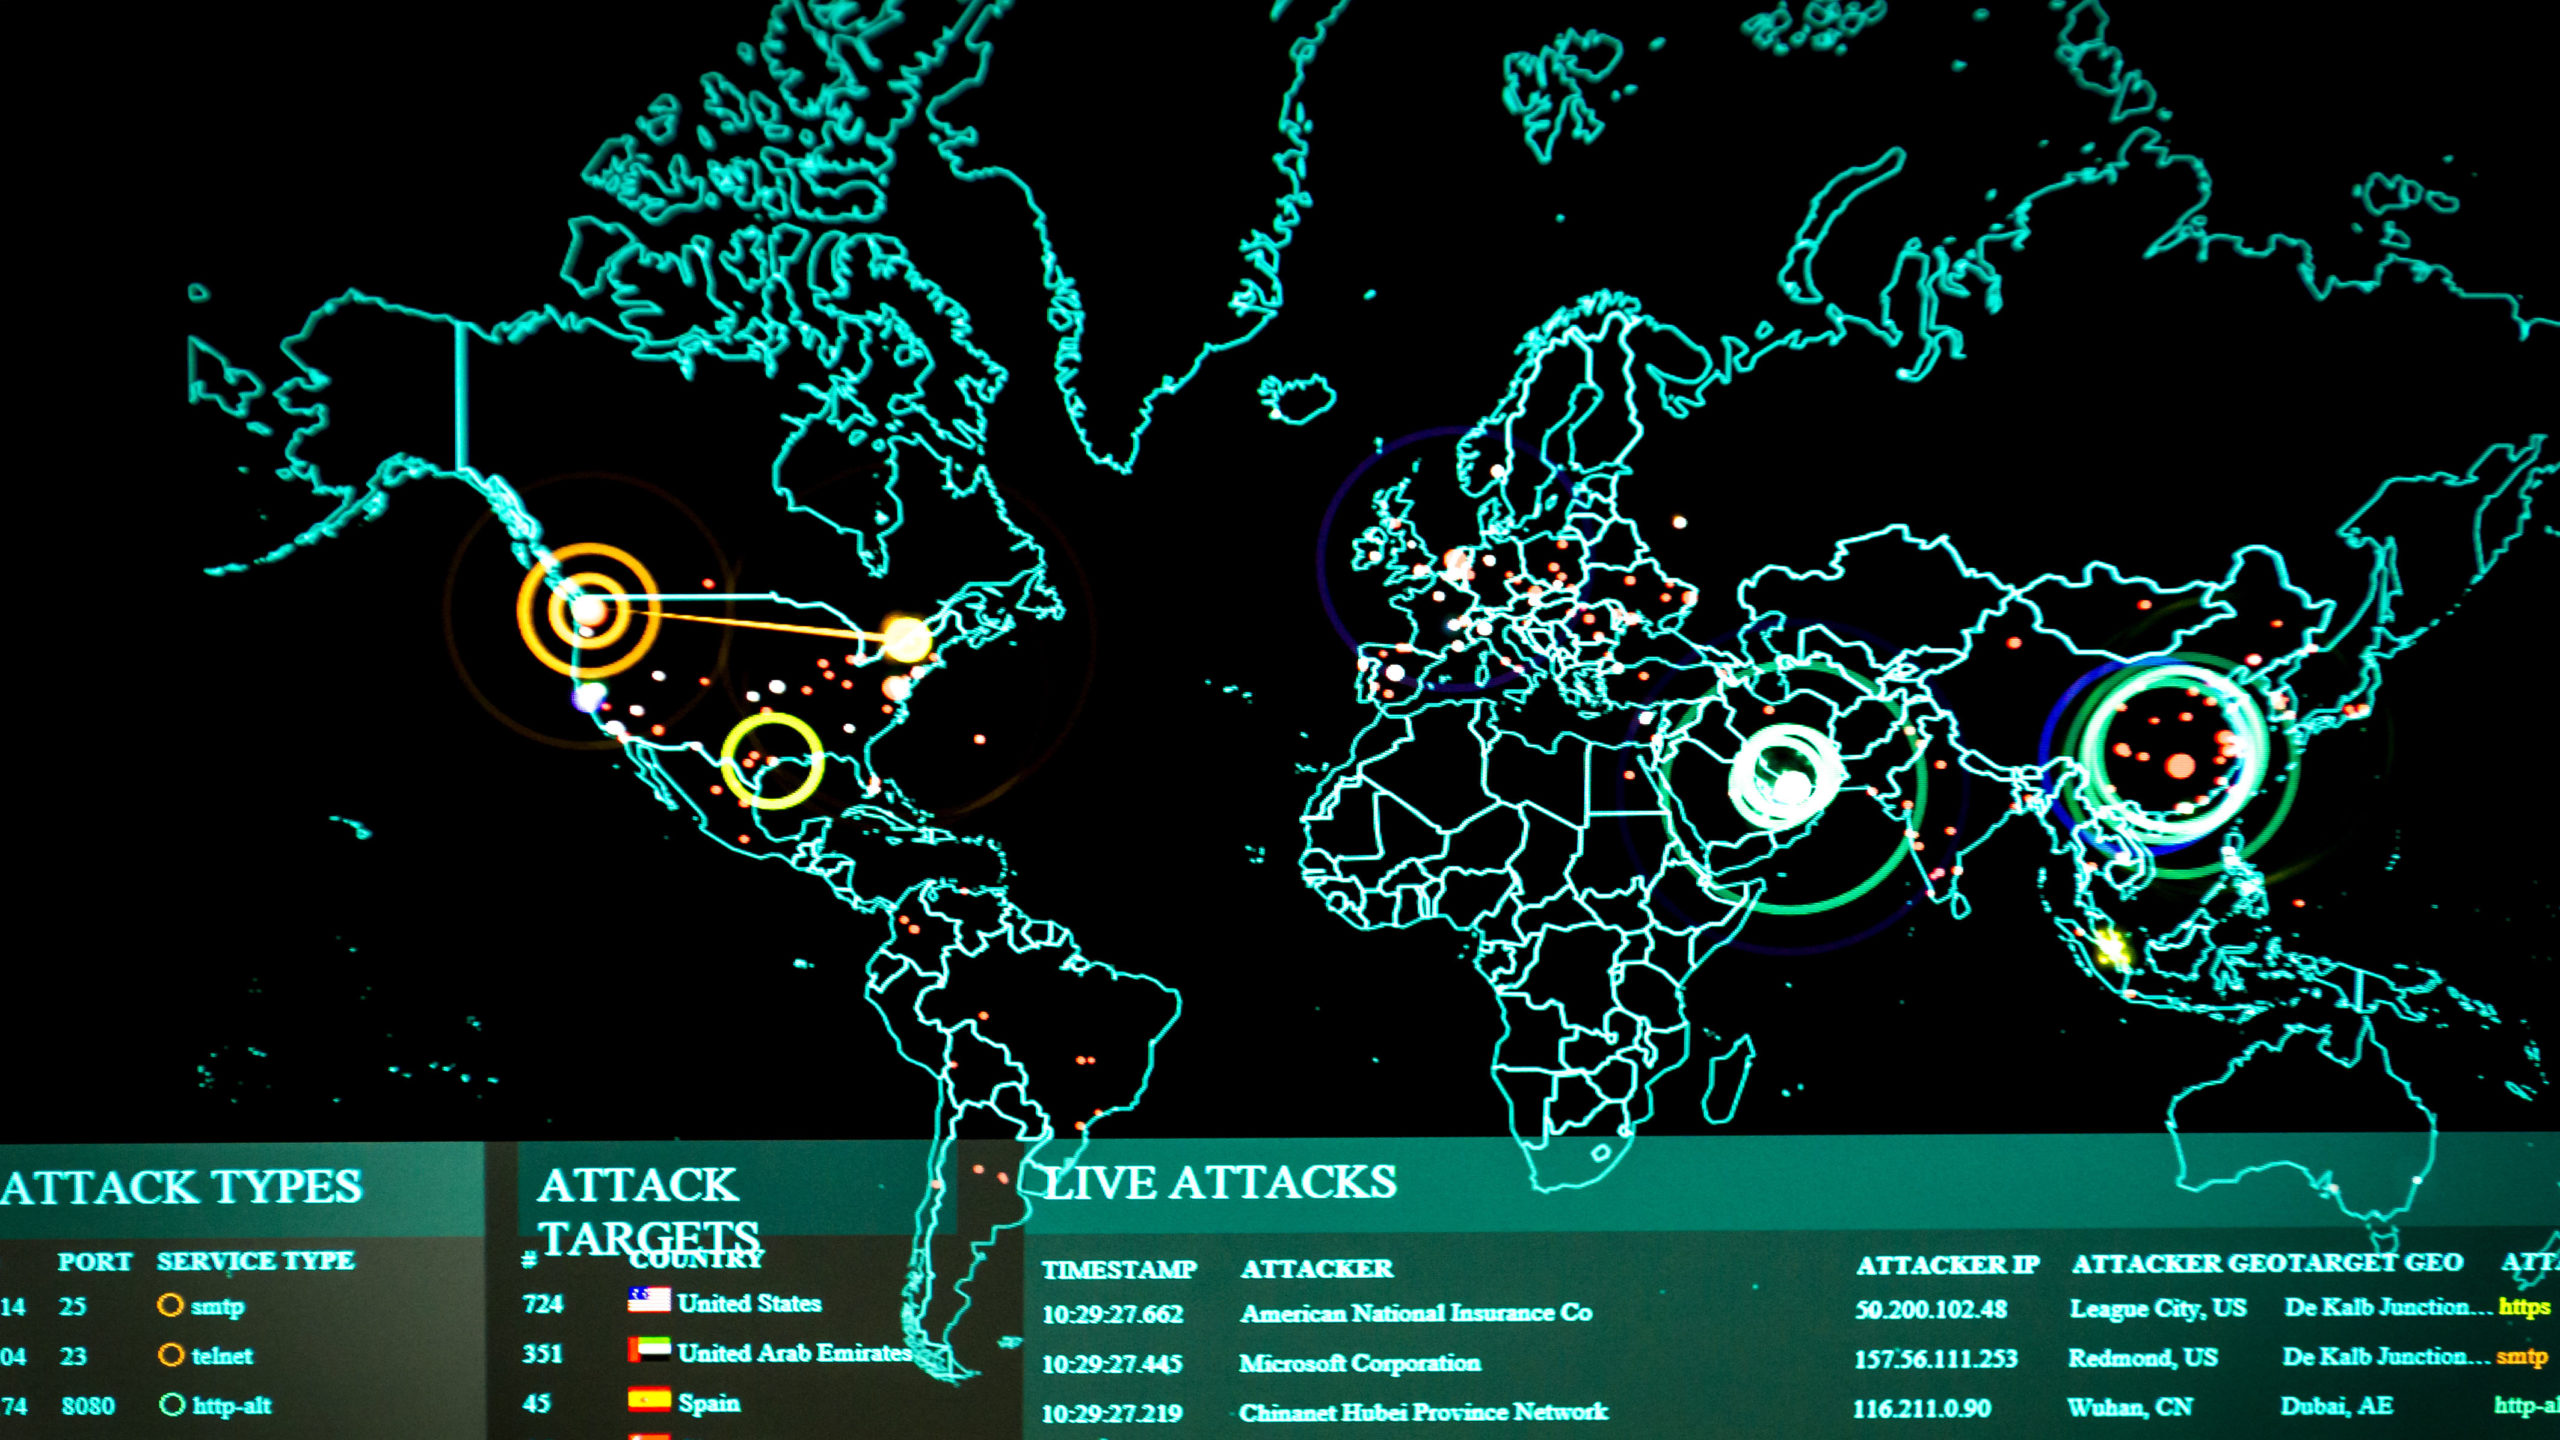 Common cyberattacks